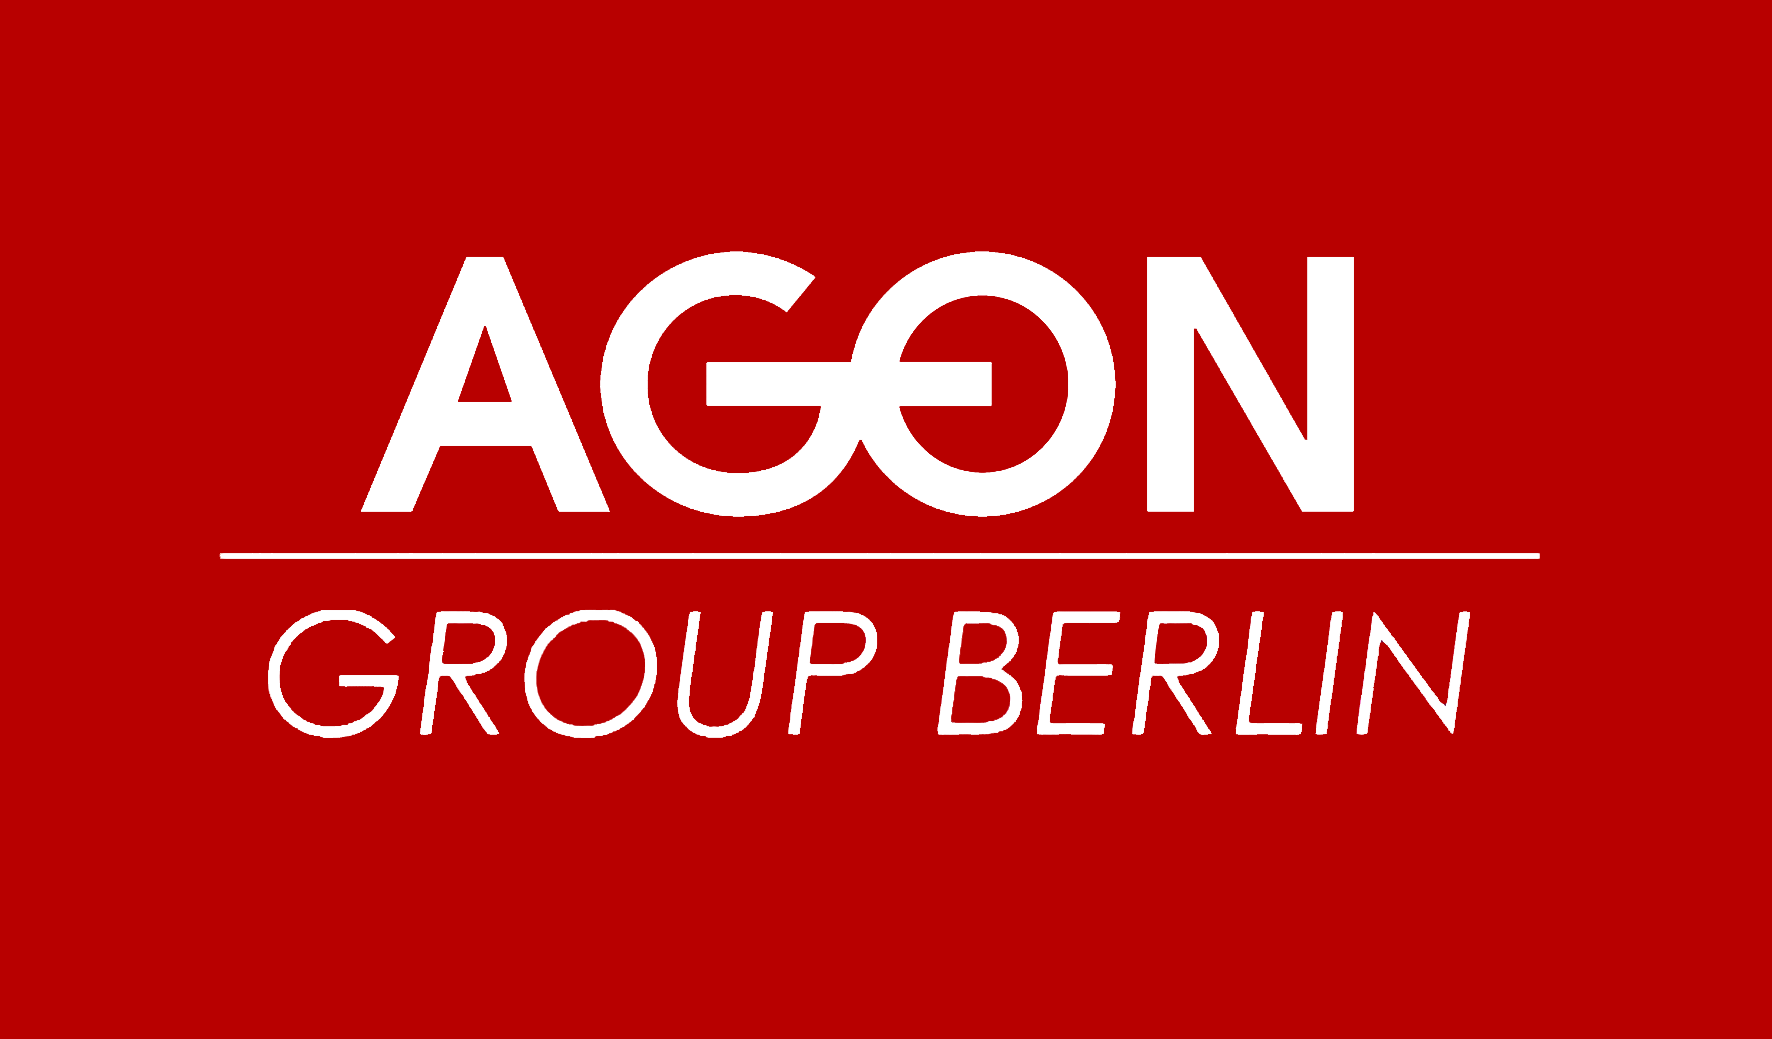 AGON Group